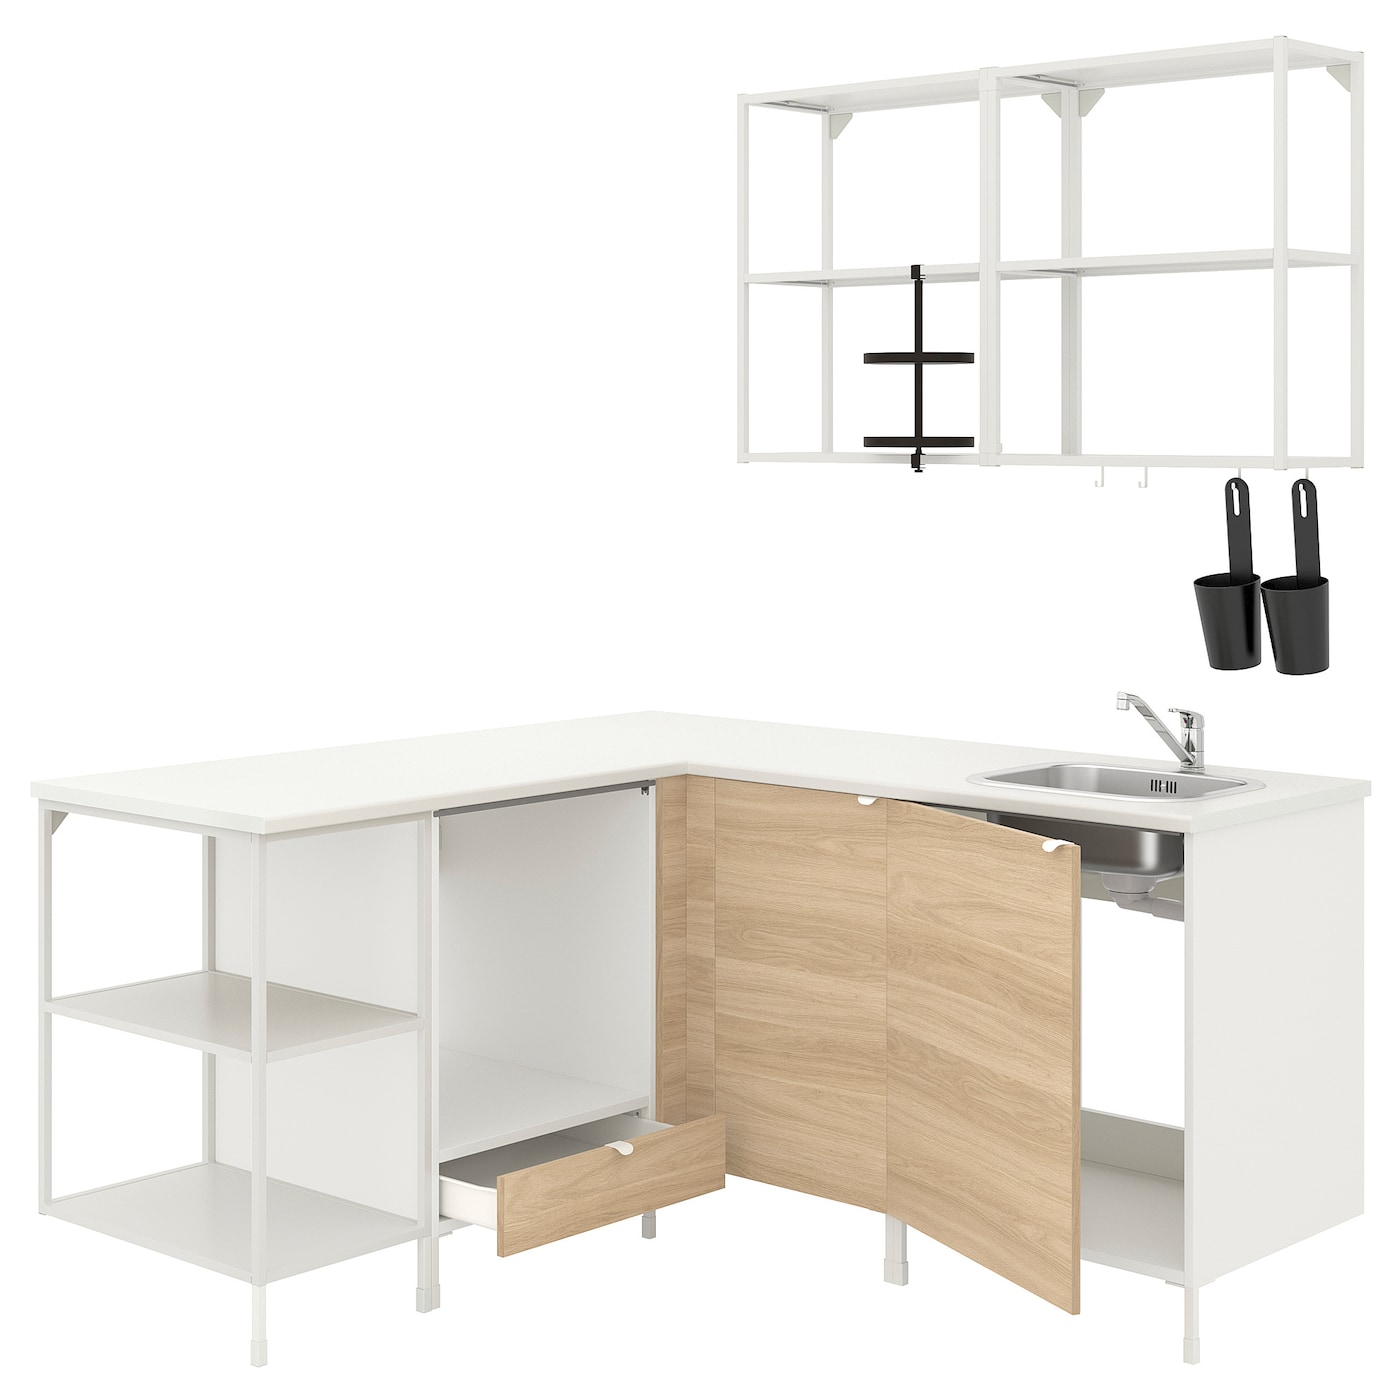 Угловая кухня -  ENHET  IKEA/ ЭНХЕТ ИКЕА, 170,5х75 см, белый/бежевый